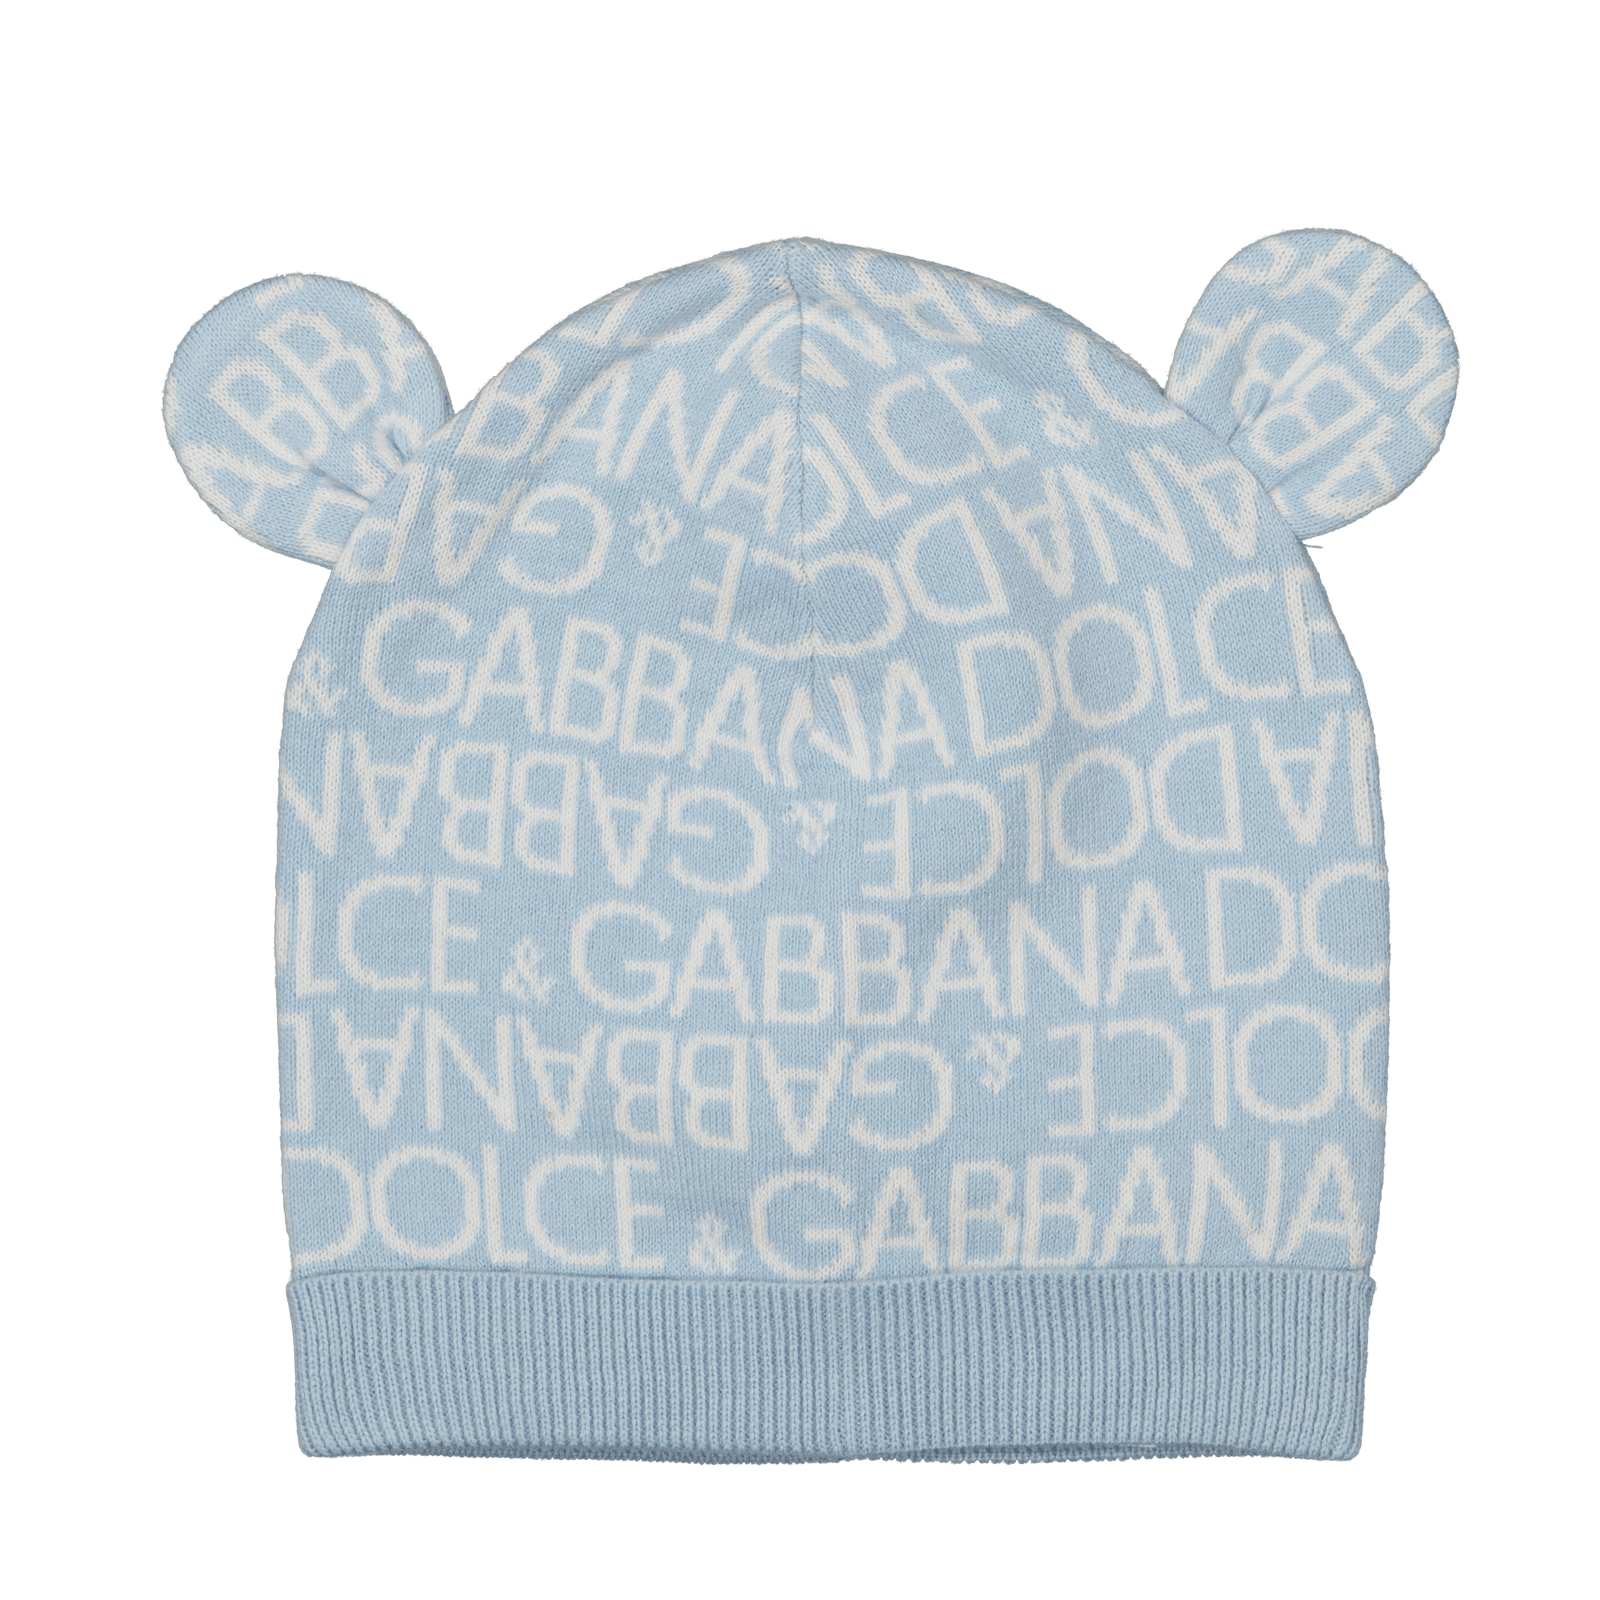 Dolce & Gabbana Baby Unisex Muts Licht Blauw s